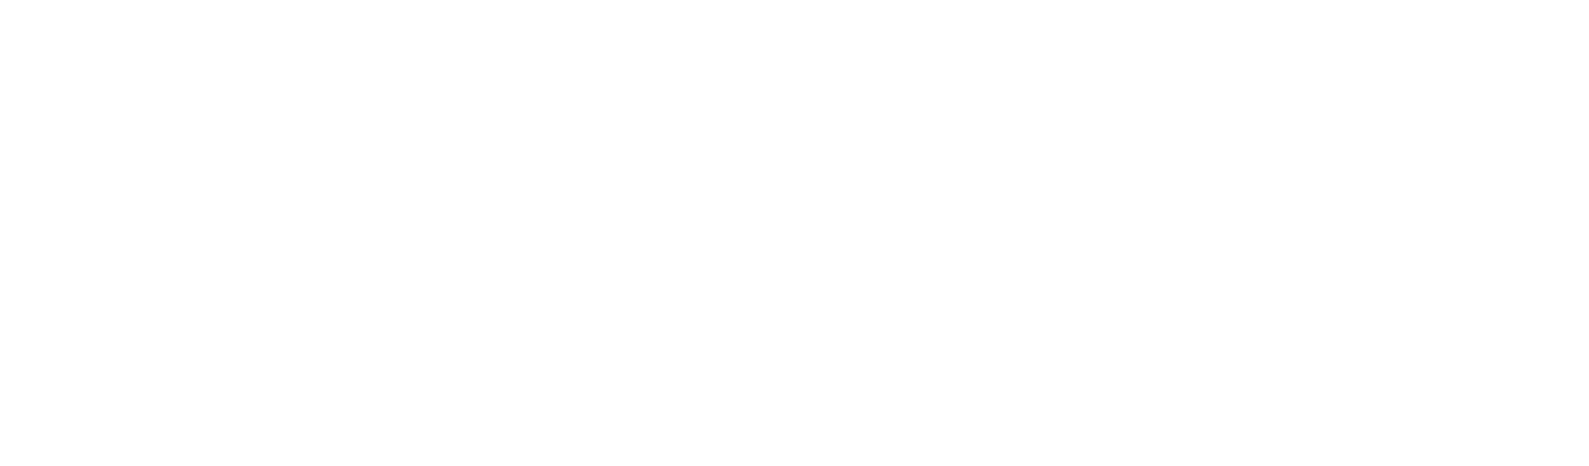 E.ON logo pour fonds sombres (PNG transparent)